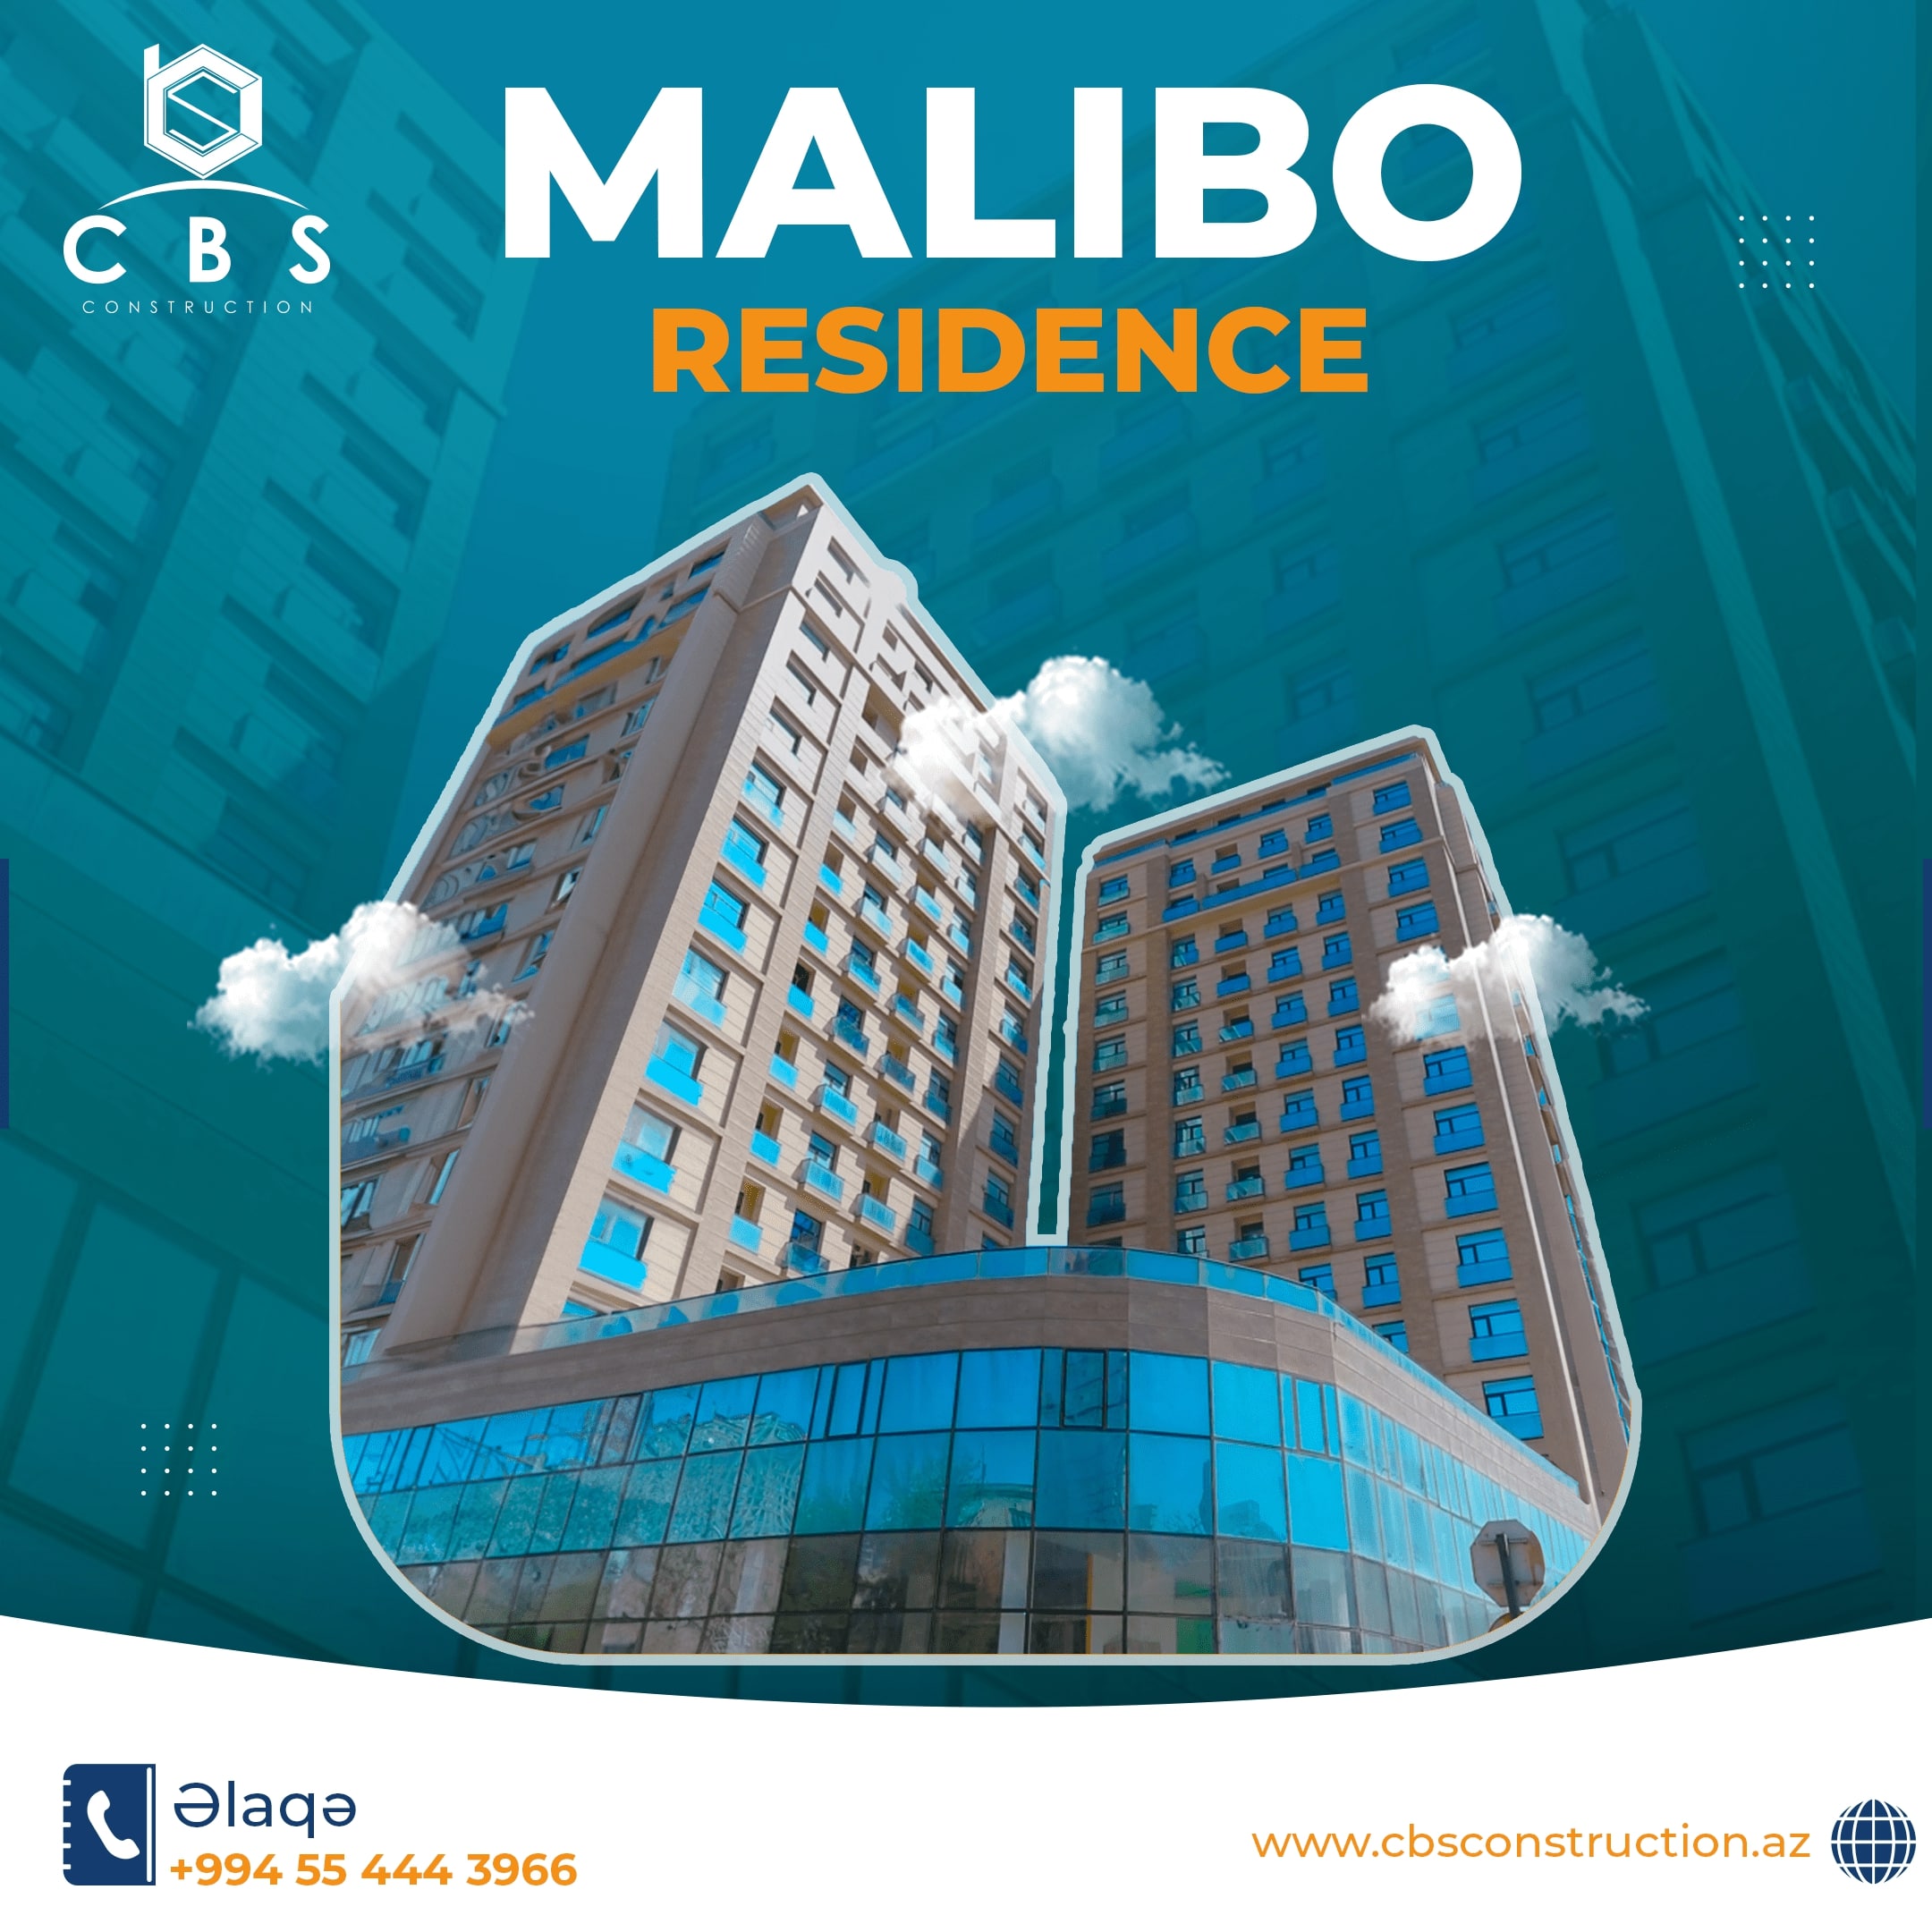 Malibo Residence